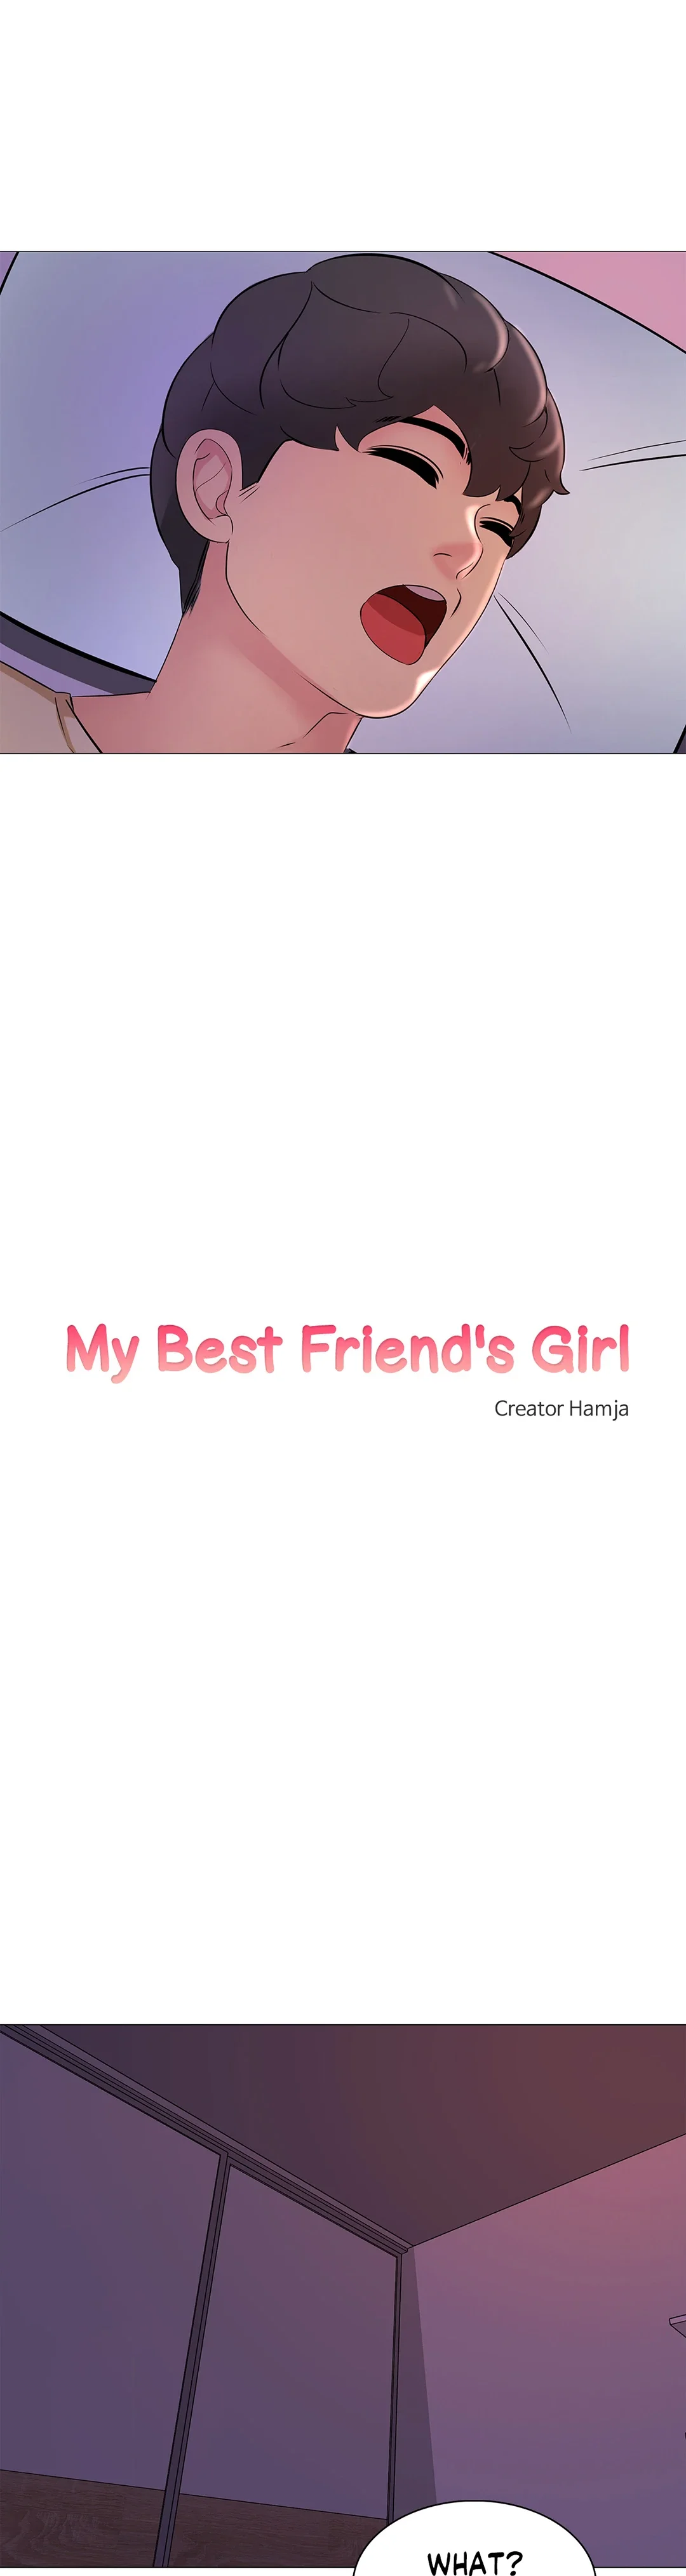 my-best-friend8217s-girl-chap-16-4